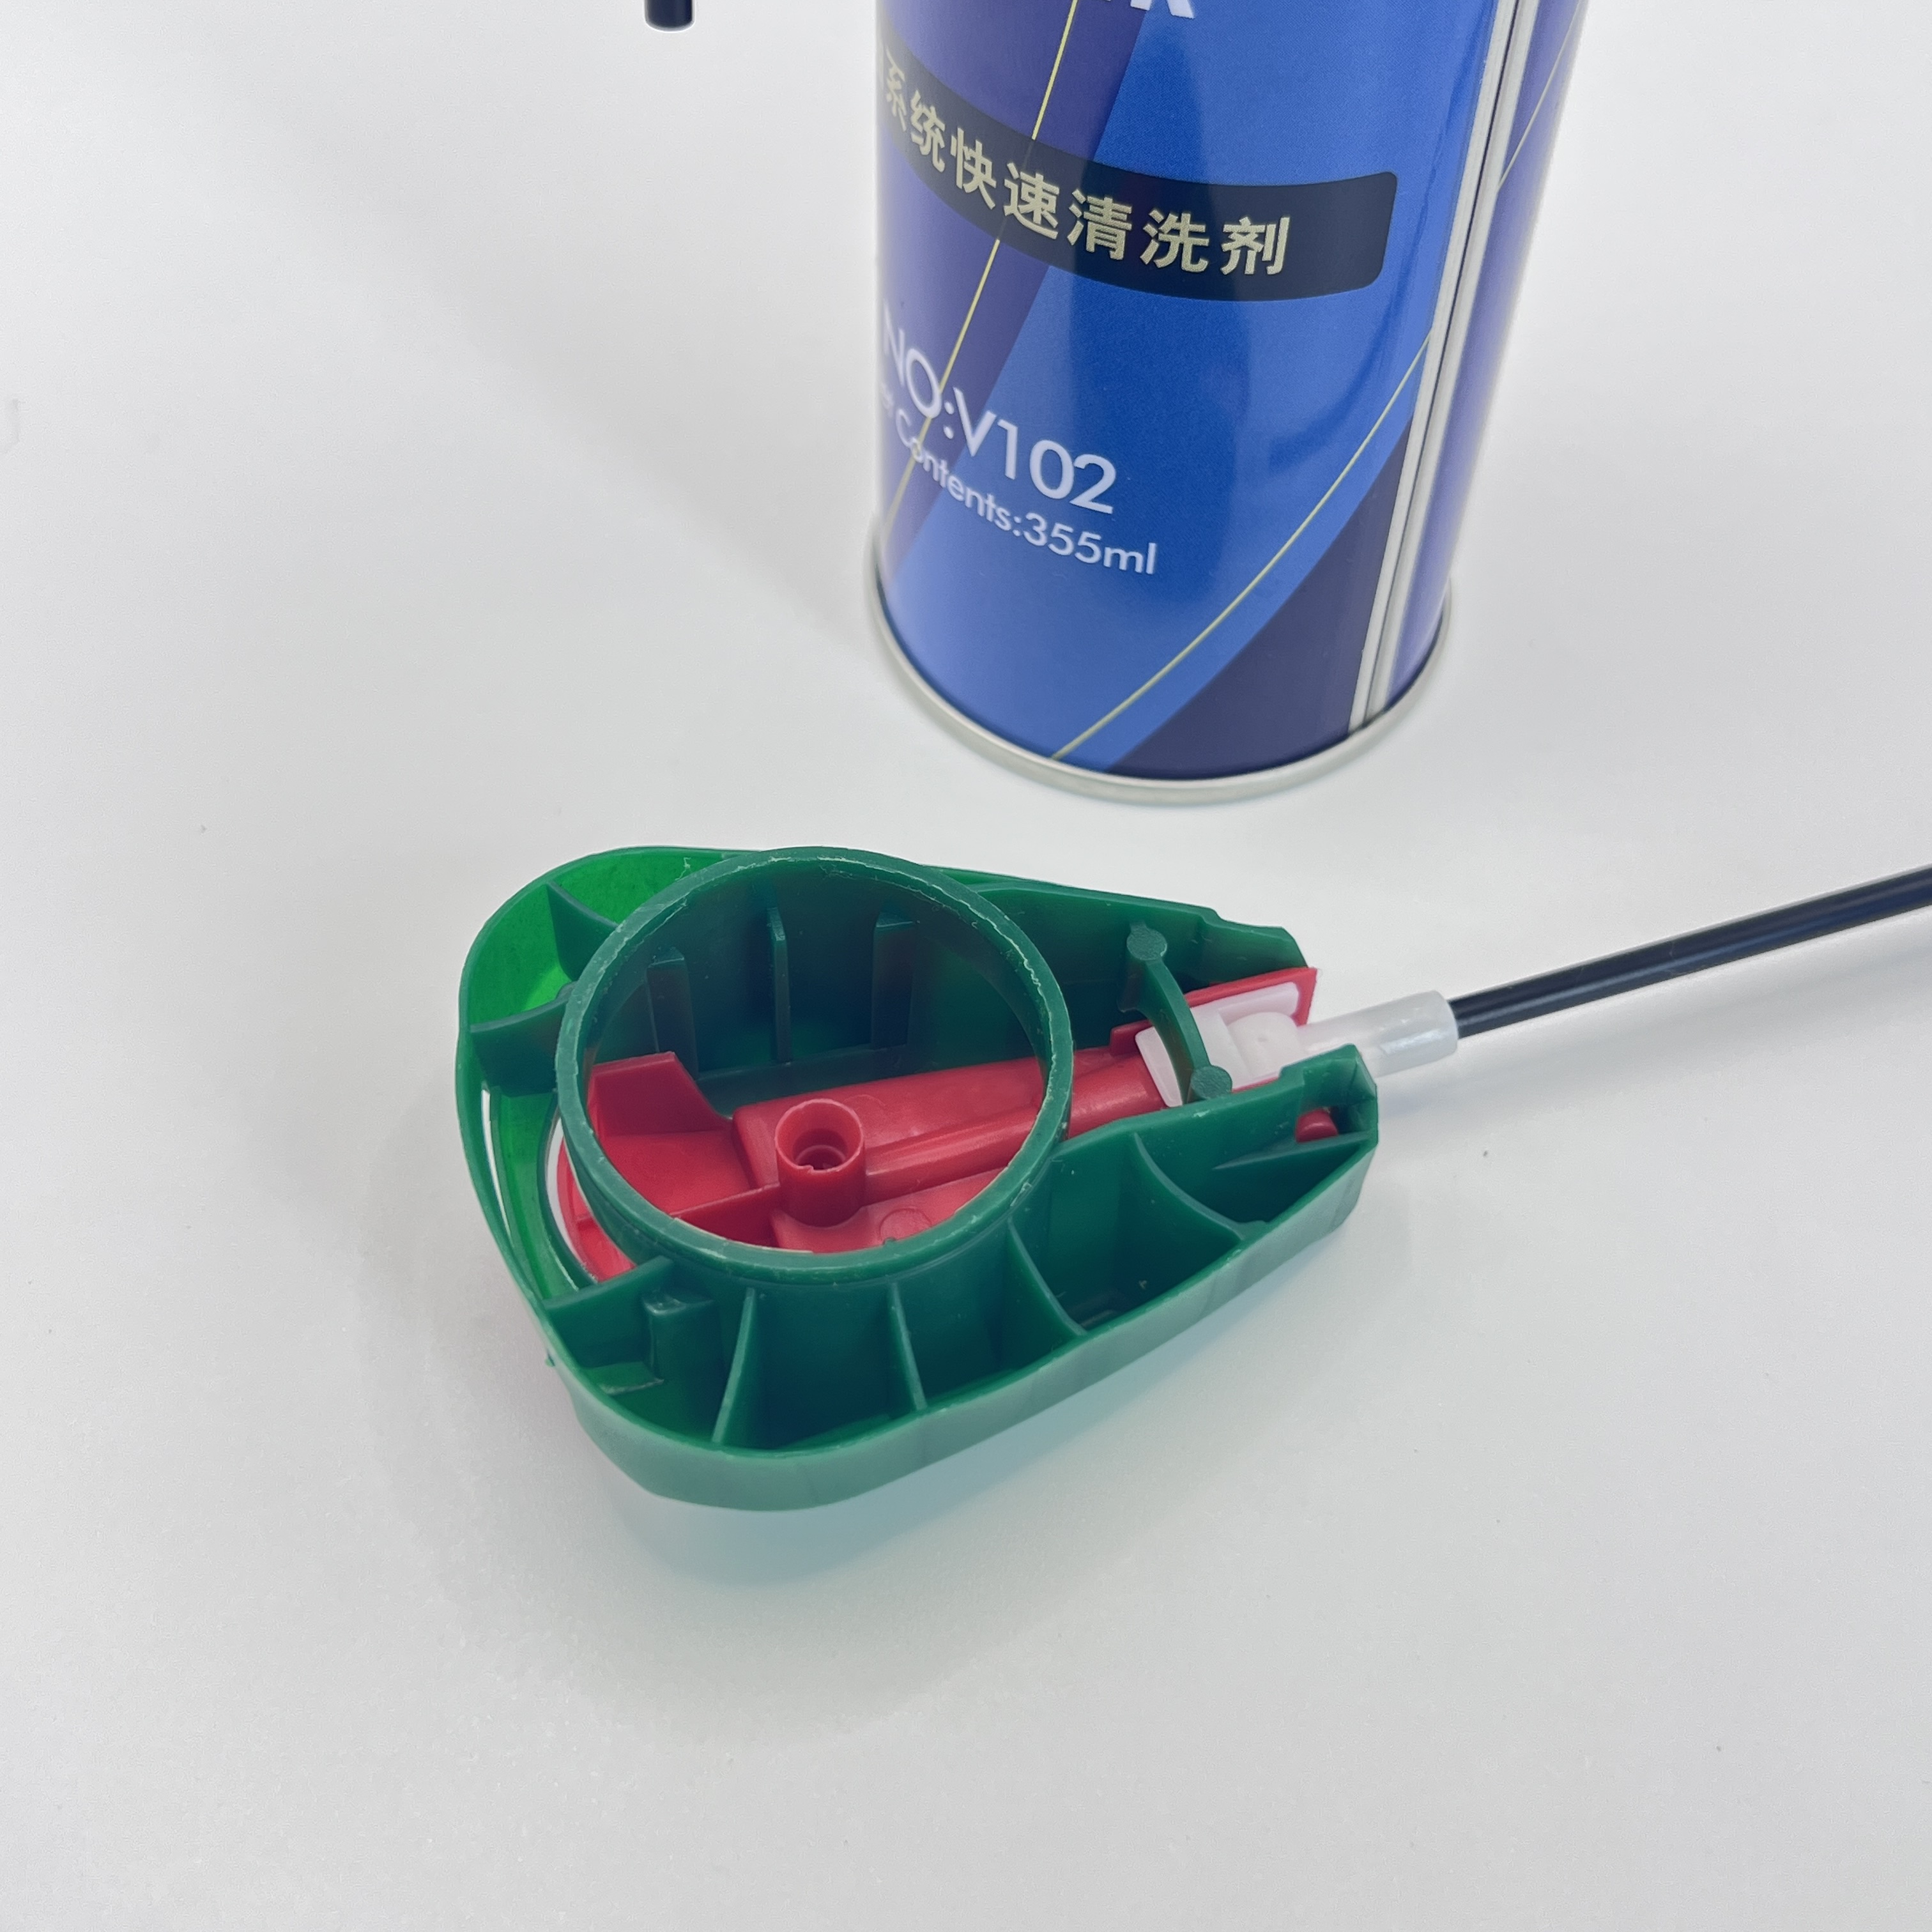 Kényelmes kioldó utántöltő kupak a palackok egyszerű és rendetlenségmentes újratöltéséhez – Sokoldalú alkalmazási megoldás